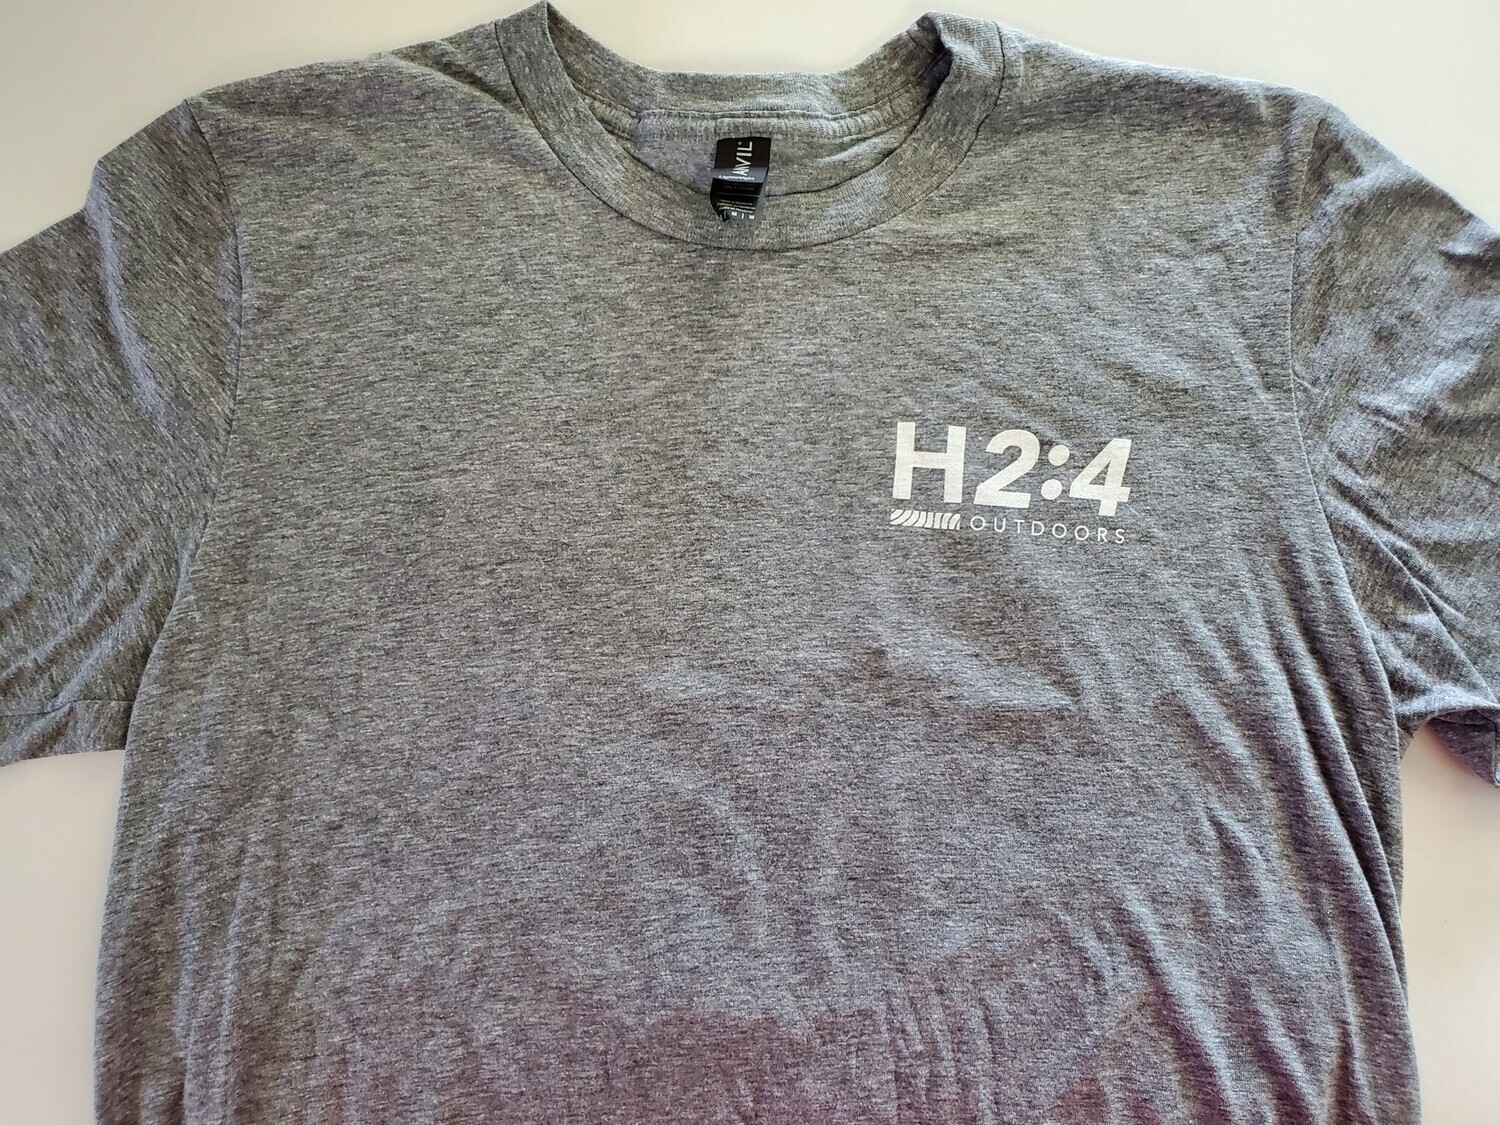 H2:4 t-shirt